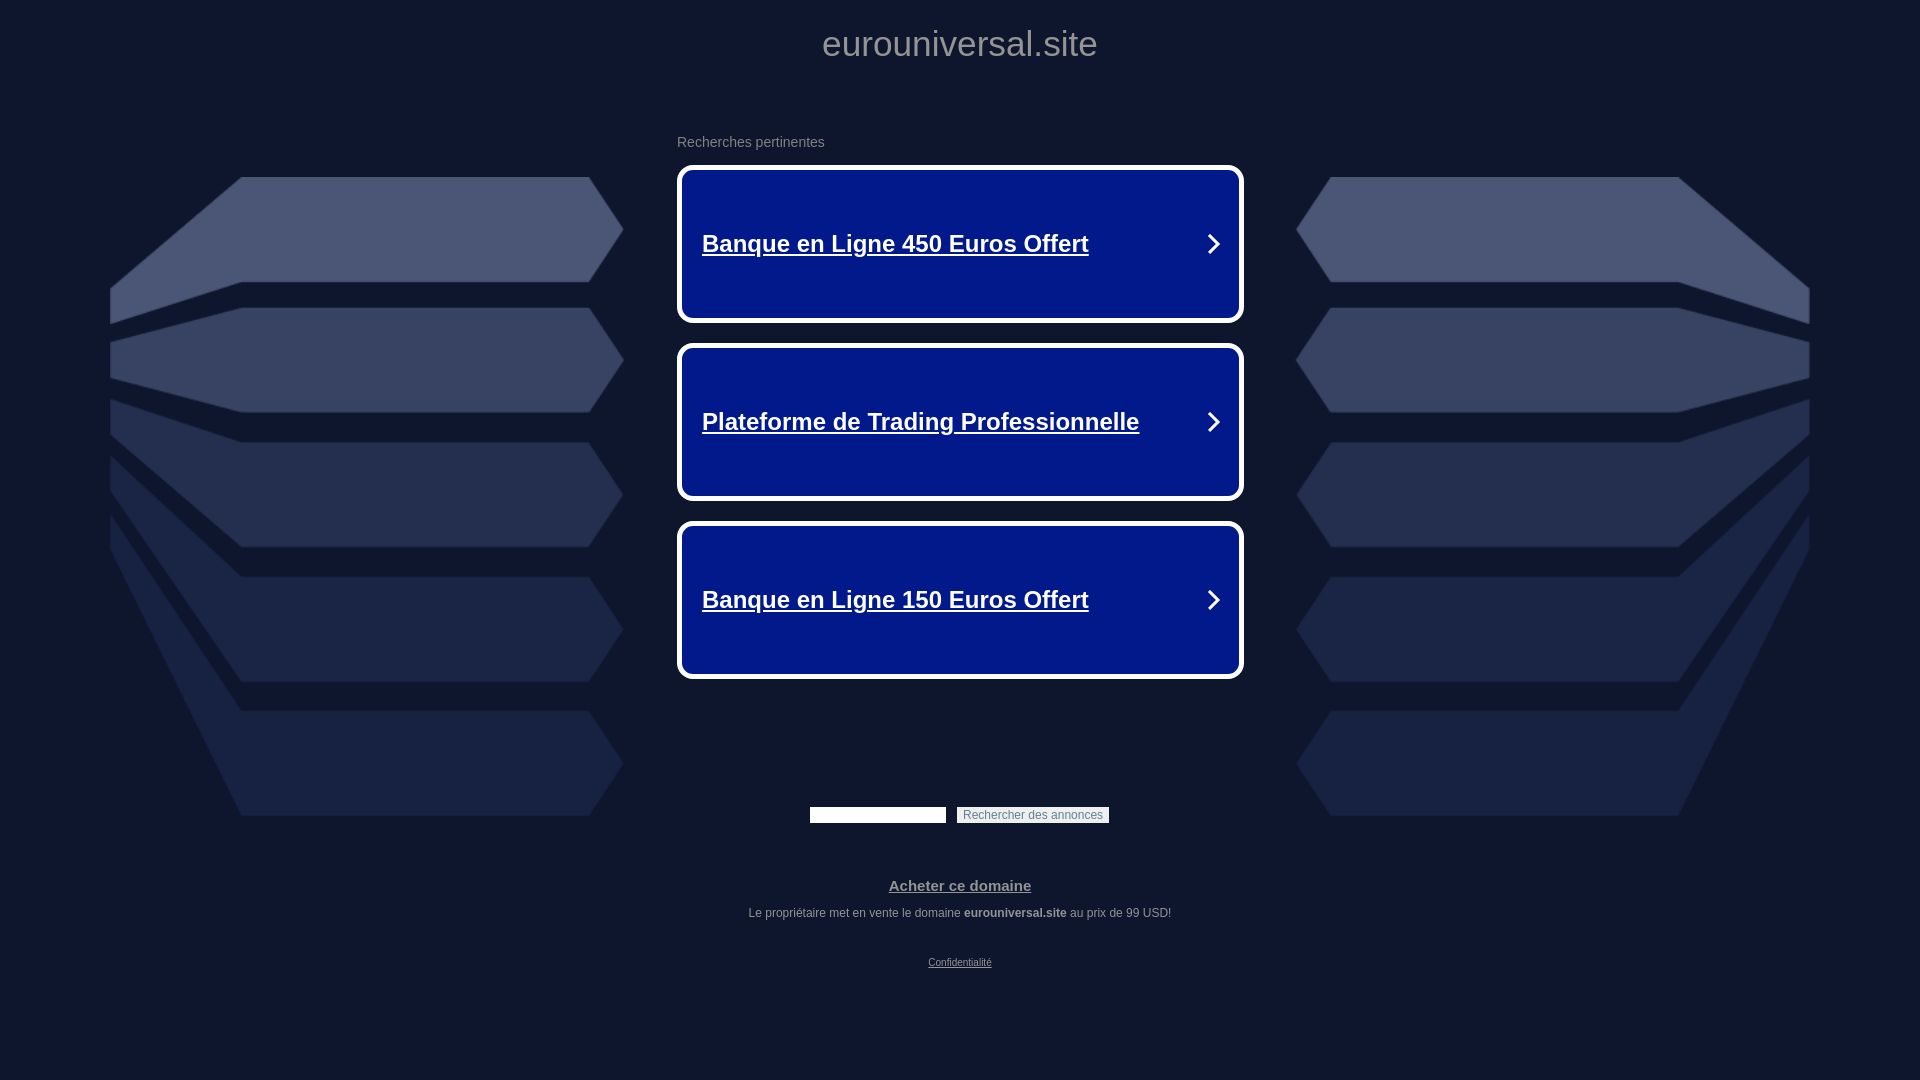 Website status panelevaxx.eurouniversal.site is   ONLINE